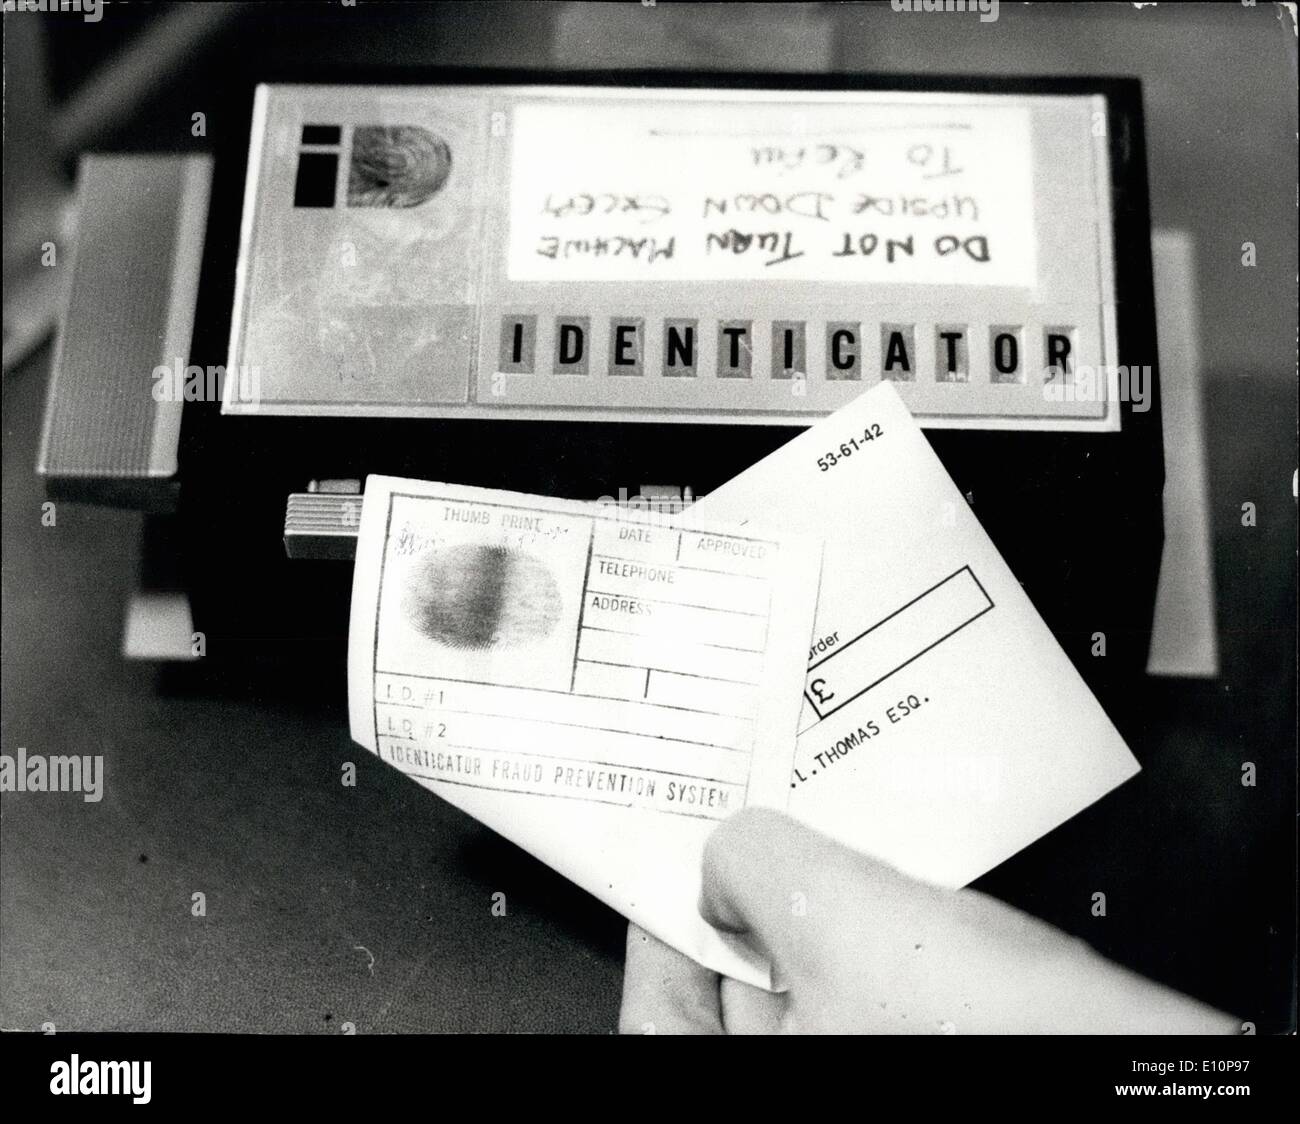 11. November 1973 - installiert HOTEL Fingerabdruck Maschine.: Eine Fingerabdruck-Maschine für Leute, die Zahlung ihrer Rechnung per Scheck, installiert wurde im Central Park Hotel in Paddington. Bezeichnet die Identicator, macht sichtbar einen Fingerabdruck des Gastes auf der Rückseite des Schecks platziert, nachdem sie unterzeichnet worden ist. Es wird behauptet, dass die Maschine die Zahl der Scheck Betrug schneiden werden die Hotels und Geschäfte Tausende von Pfund pro Jahr Kosten. Keystone-Fotoshows:-Identicator-Fingerabdruck-Maschine, abgebildet im Central Park Hotel heute. Stockfoto